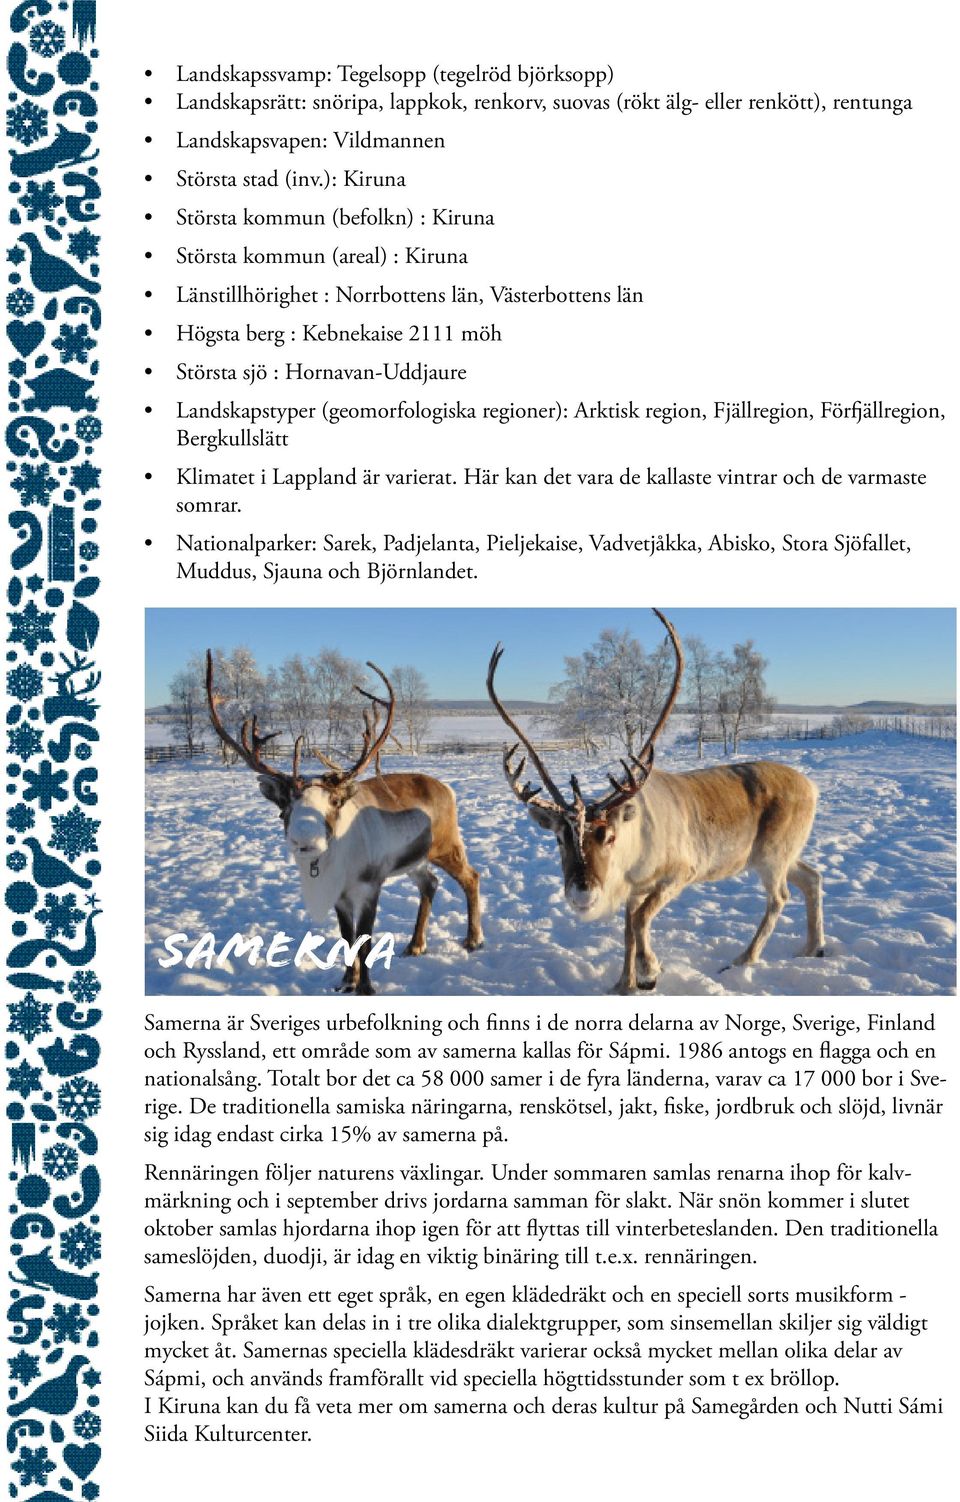 Landskapstyper (geomorfologiska regioner): Arktisk region, Fjällregion, Förfjällregion, Bergkullslätt Klimatet i Lappland är varierat. Här kan det vara de kallaste vintrar och de varmaste somrar.